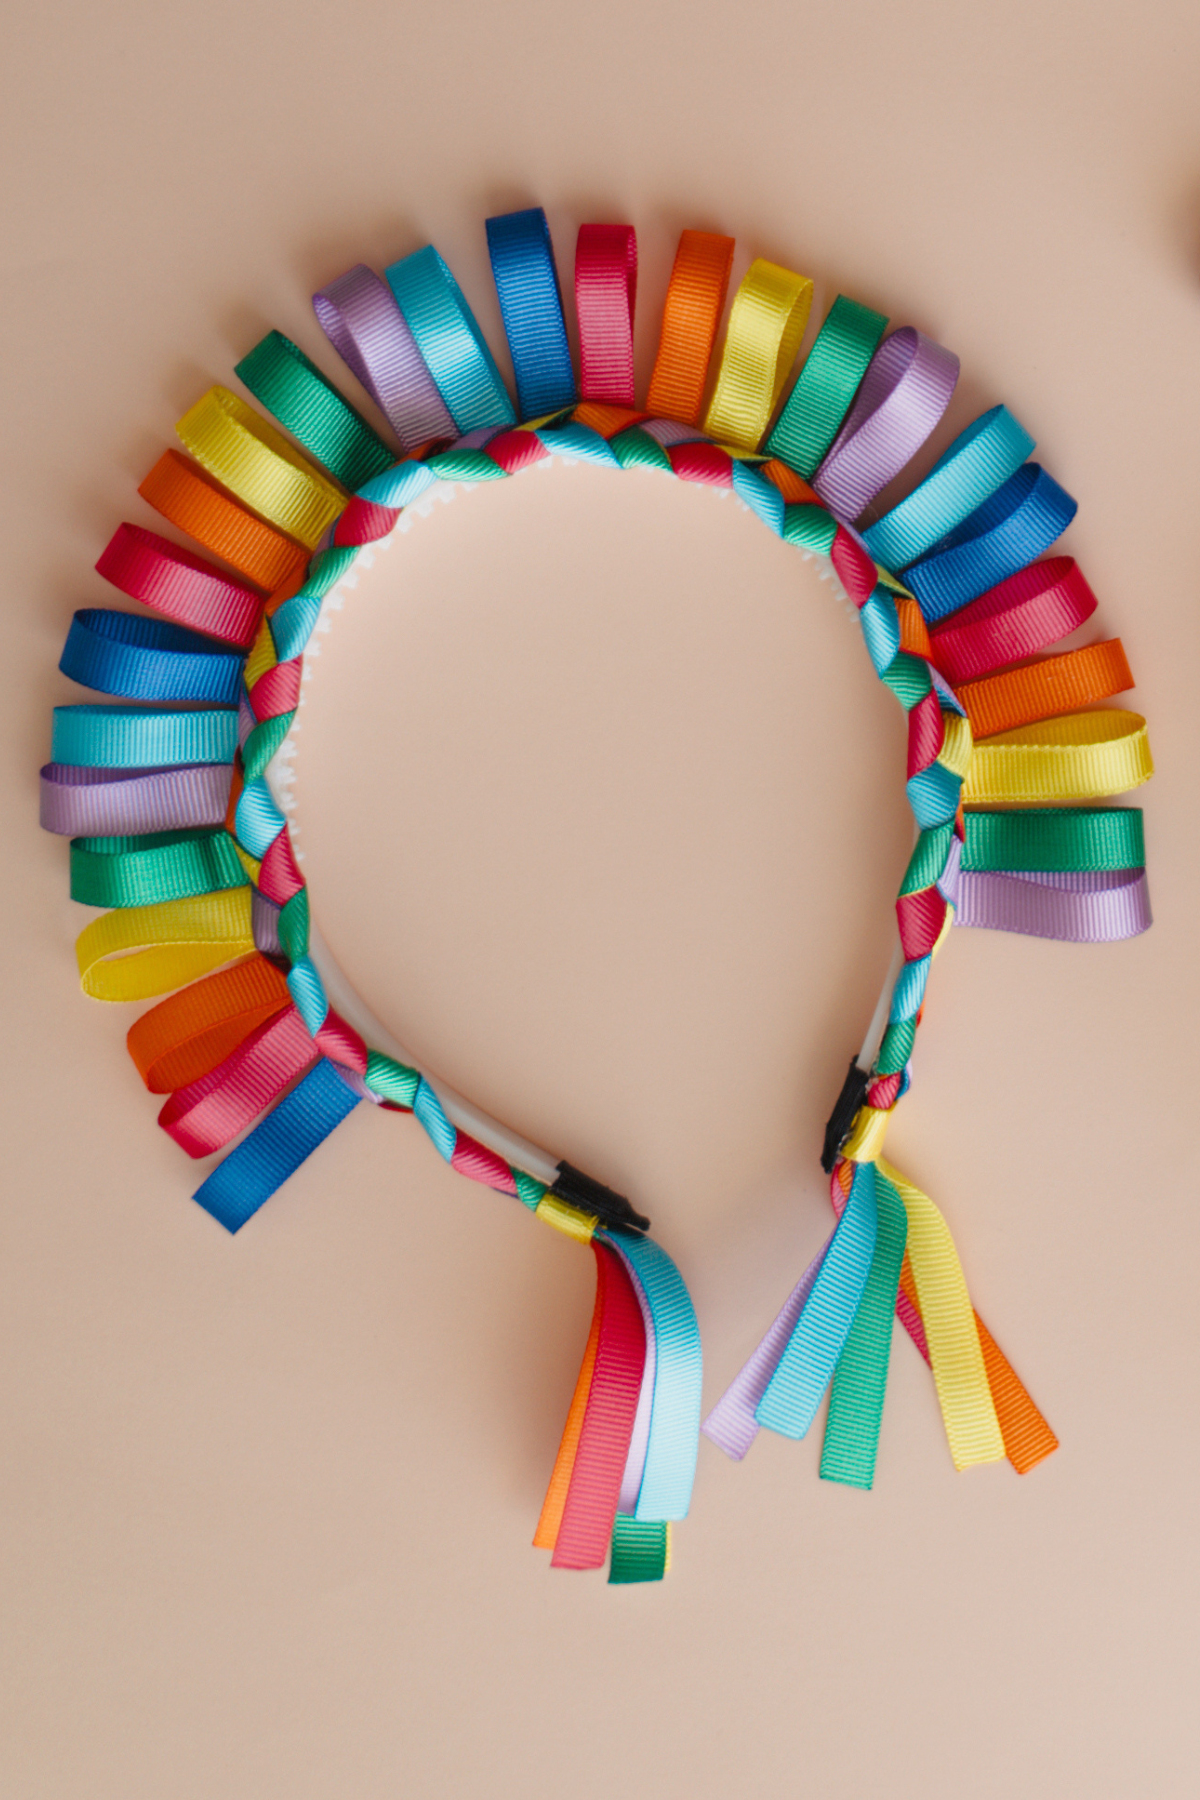 Handmade Party Headband with Ribbons